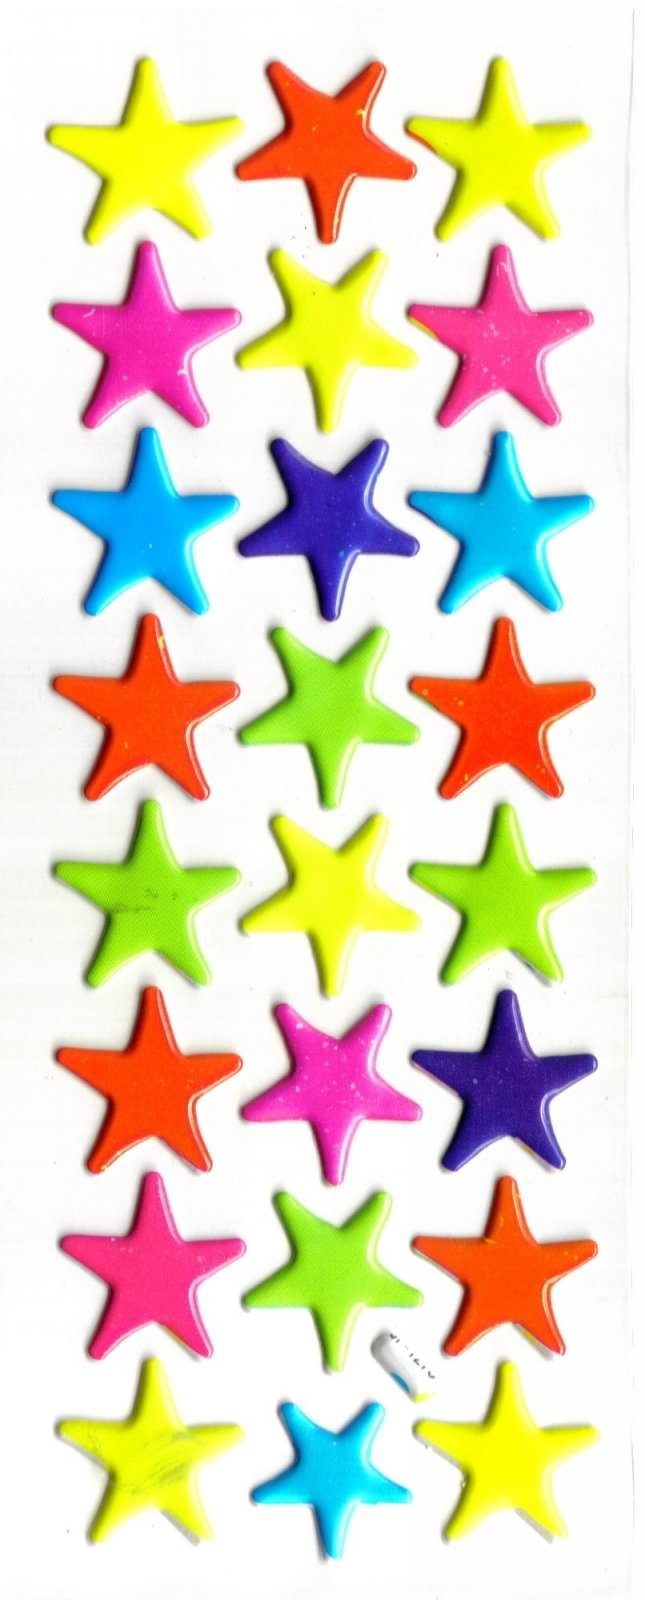 etoiles colorées enfant bebe apprendre les couleurs gommette autocollante sticker decoration JF1276